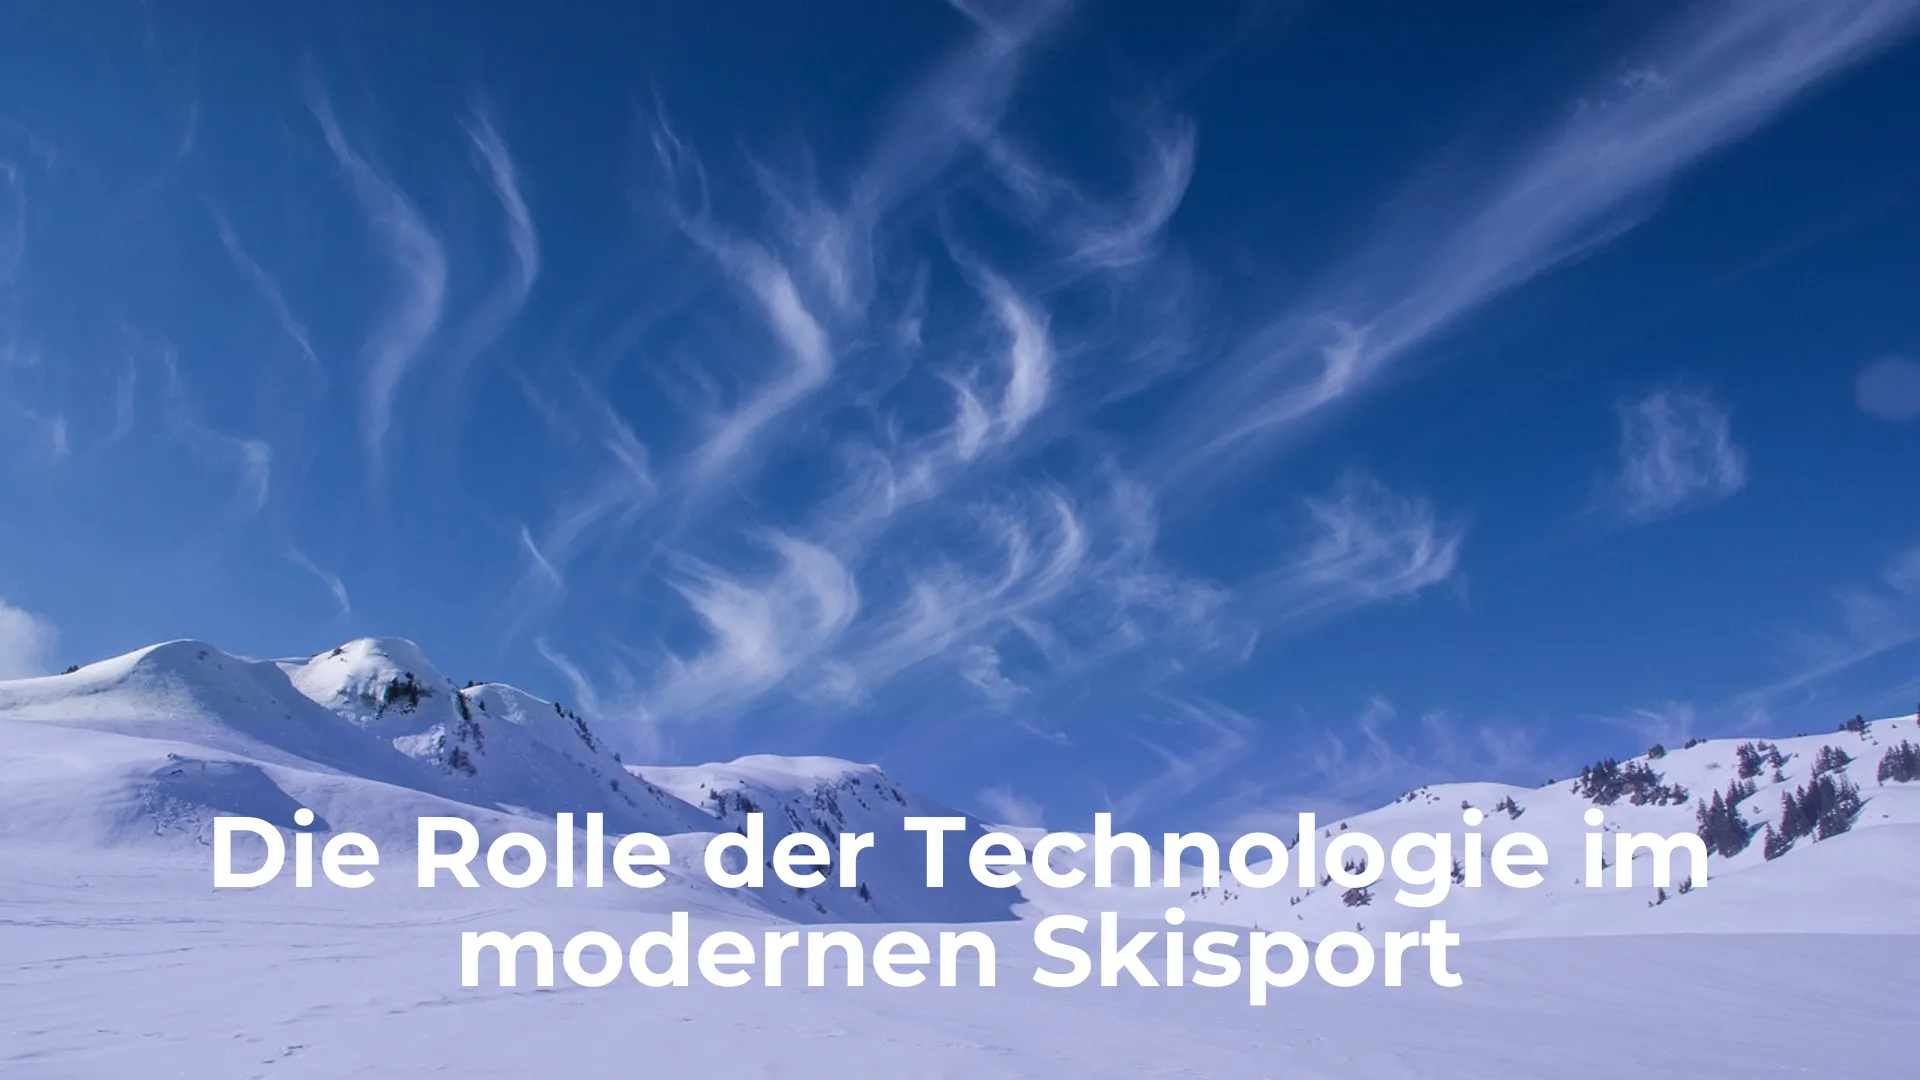 Die rolle der technologie im modernen skisport